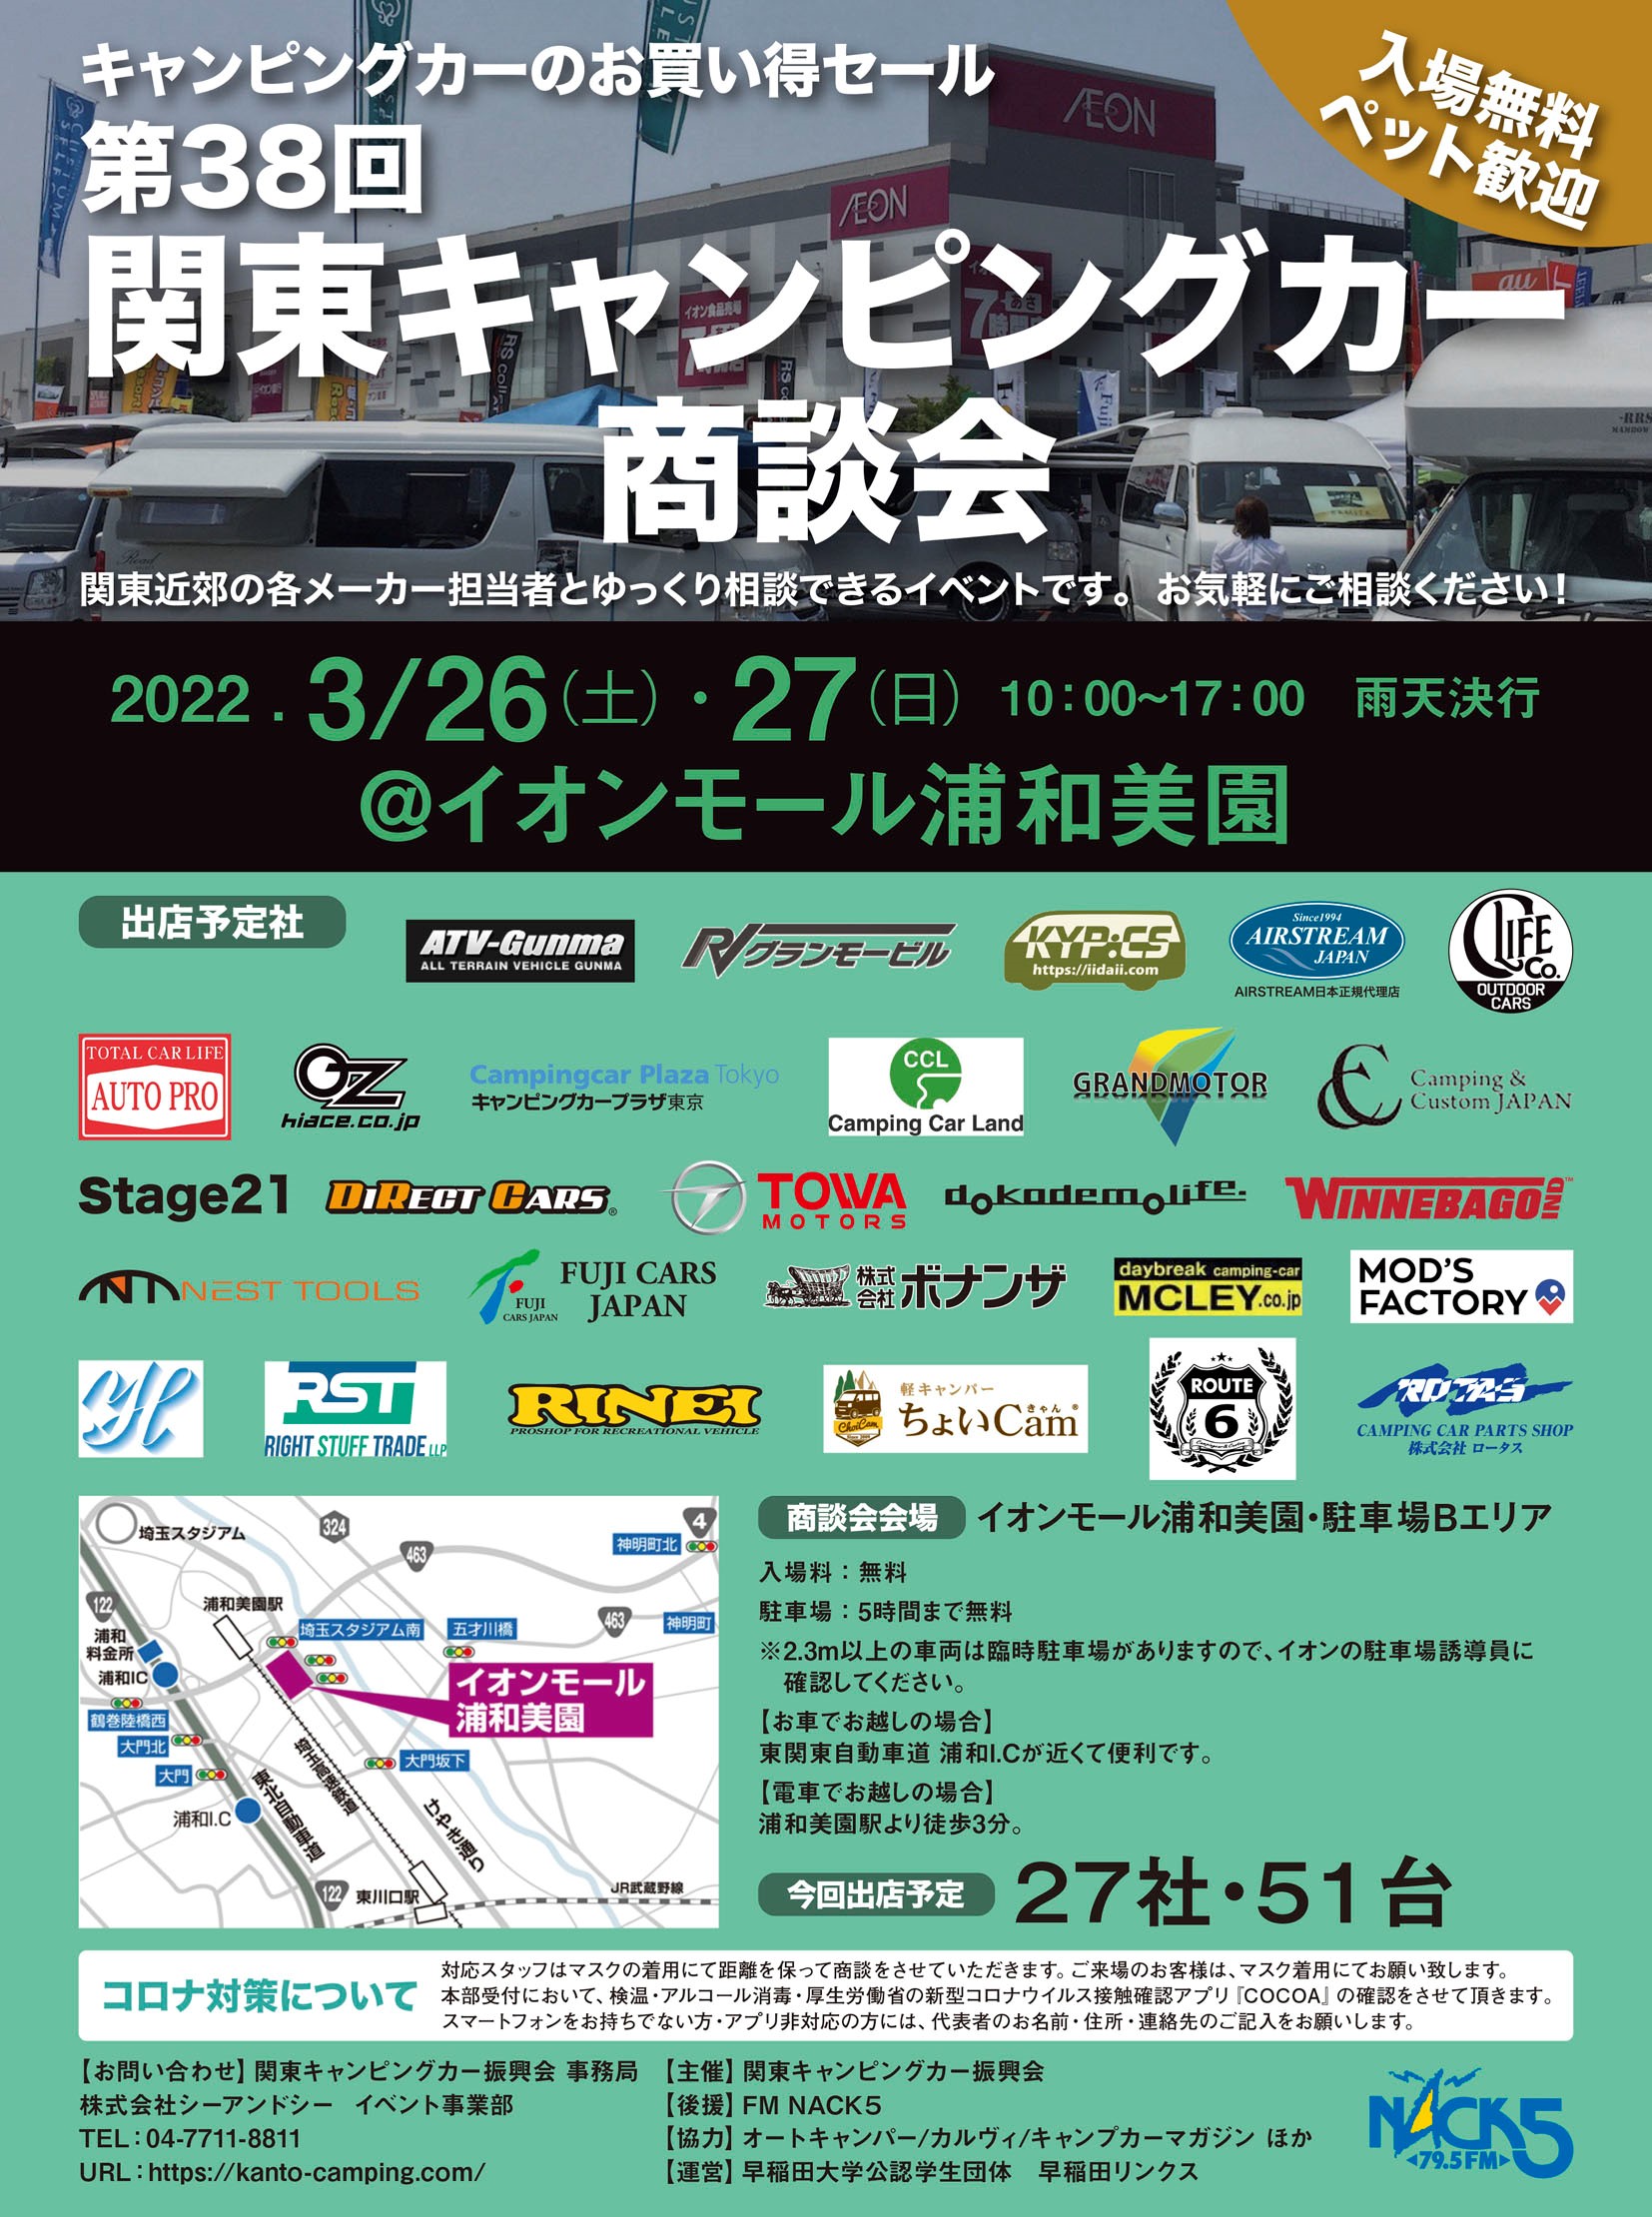 関東キャンピングカー商談会 毎年３ ４回 イオンモール浦和美園 １ ２回 成田ビューホテル で開催している地域密着型イベント 関東 キャンピングカー商談会